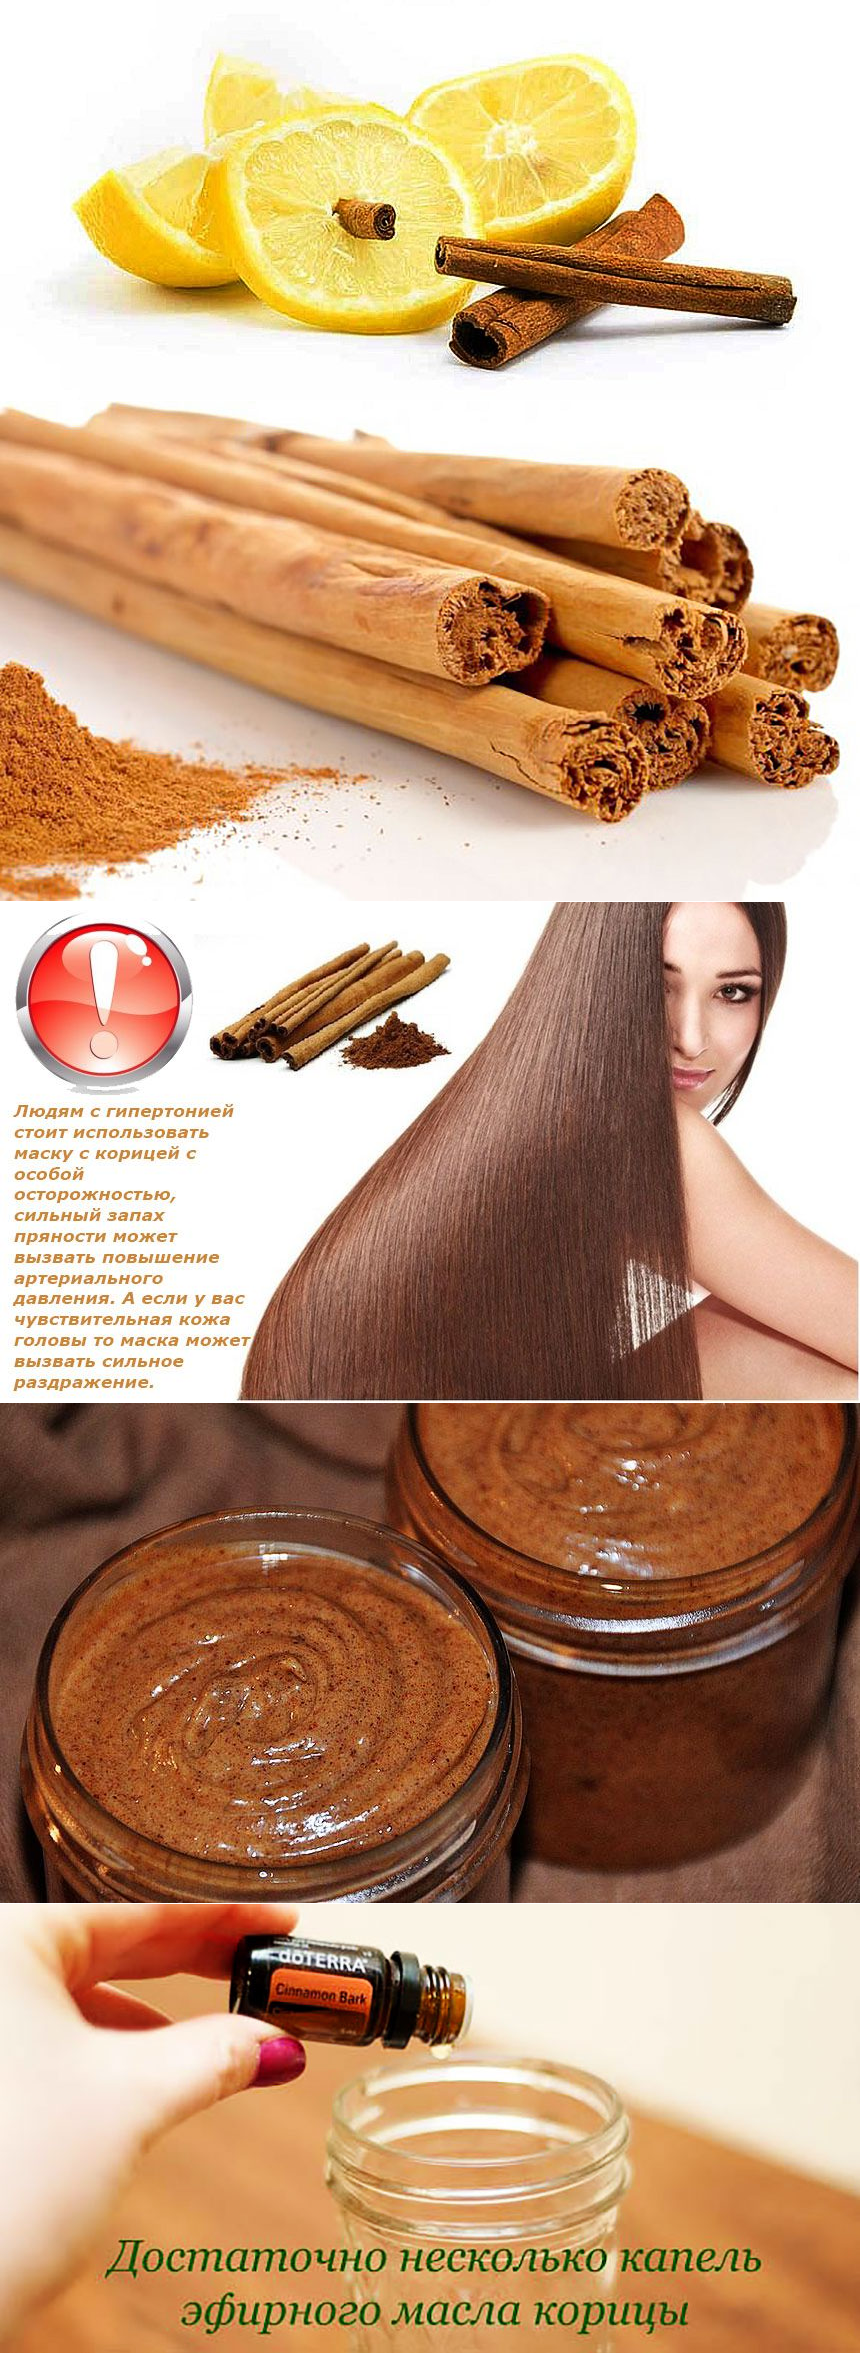 Маска для волос из корицы меда и репейного масла для волос